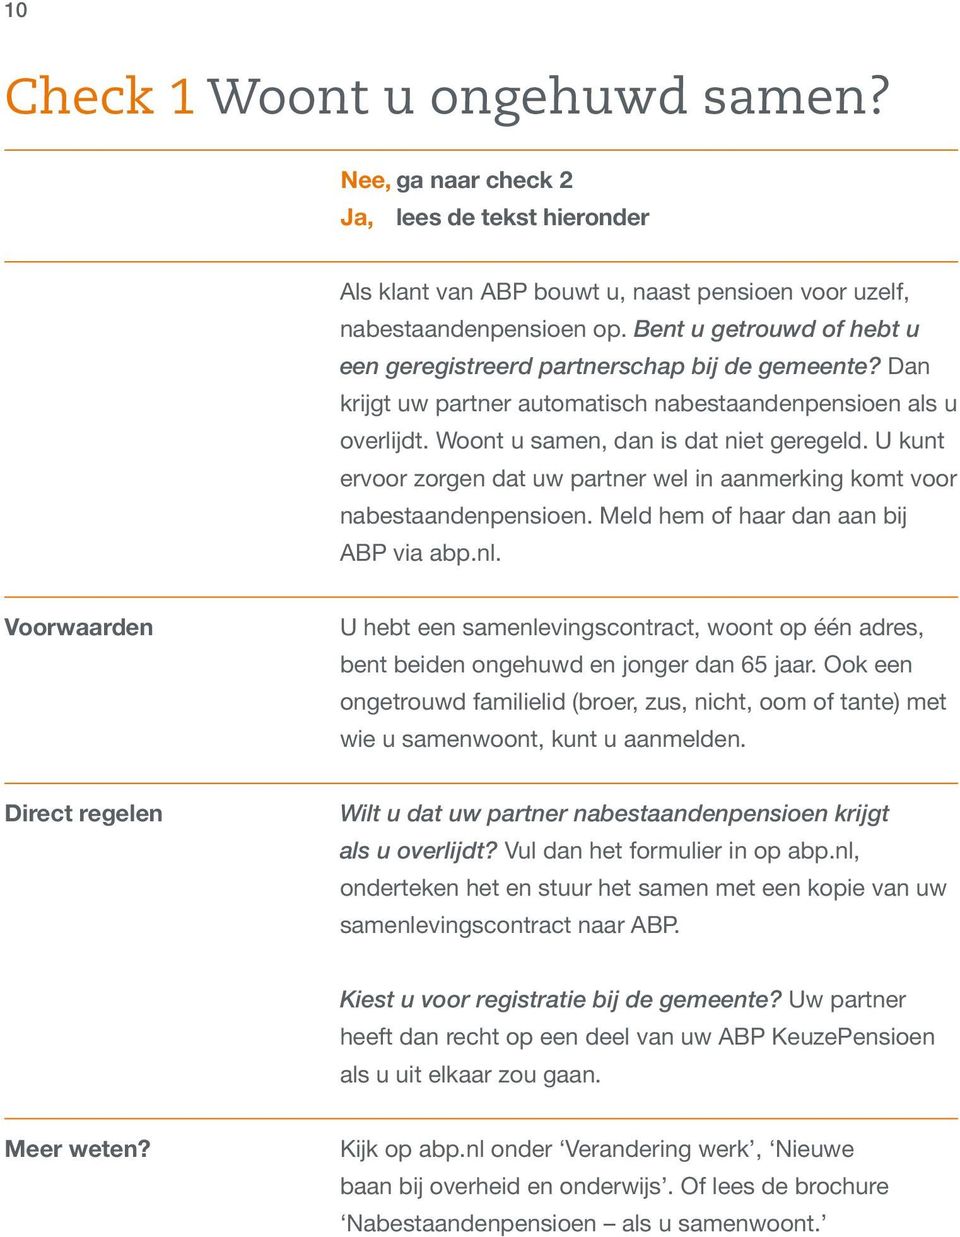 U kunt ervoor zorgen dat uw partner wel in aanmerking komt voor nabestaandenpensioen. Meld hem of haar dan aan bij ABP via abp.nl.